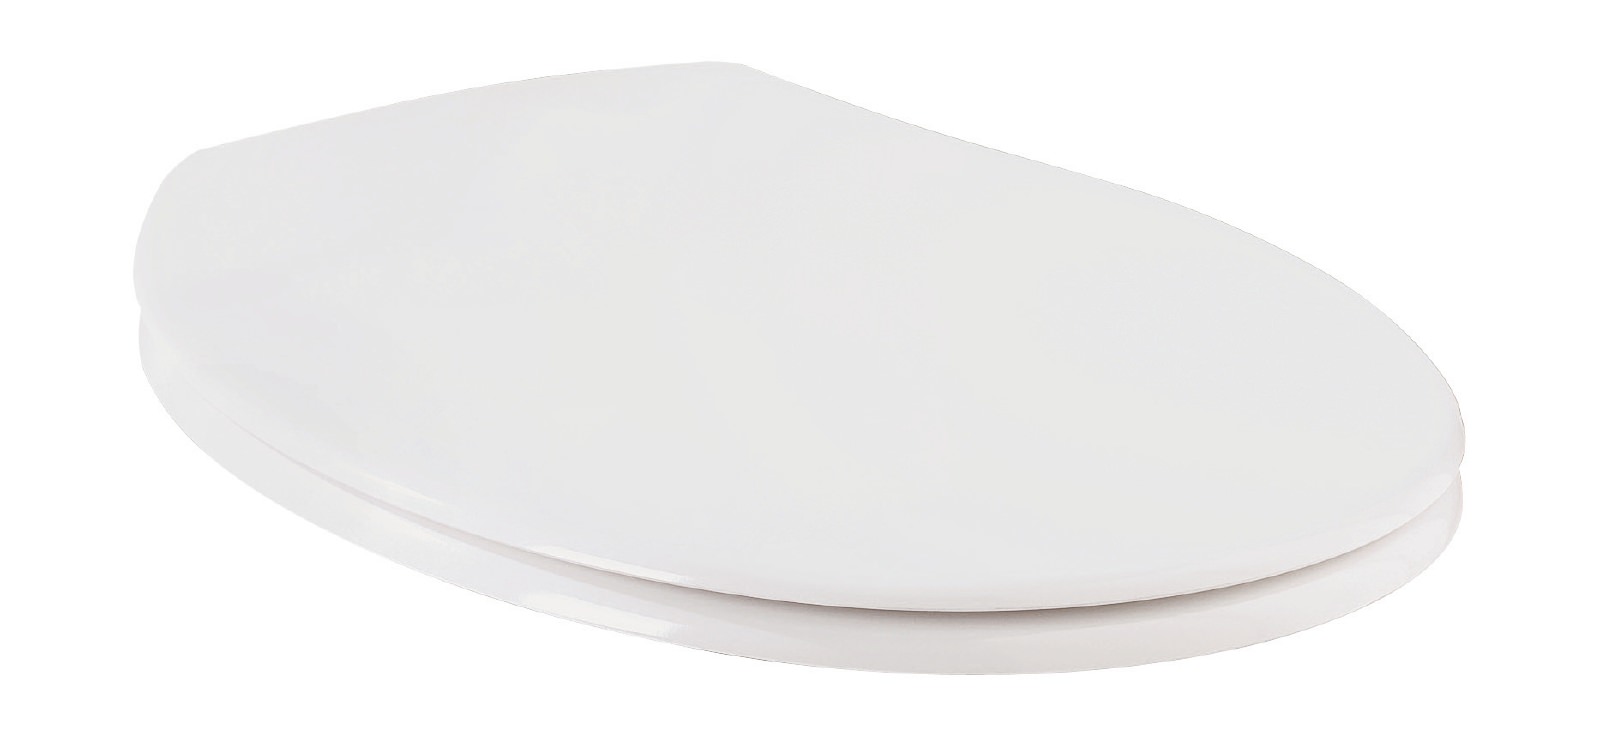 WC-Sitz mit Absenkautomatik Essential Soft in Weiß, abnehmbar, aus Duroplast mit Metallscharnier